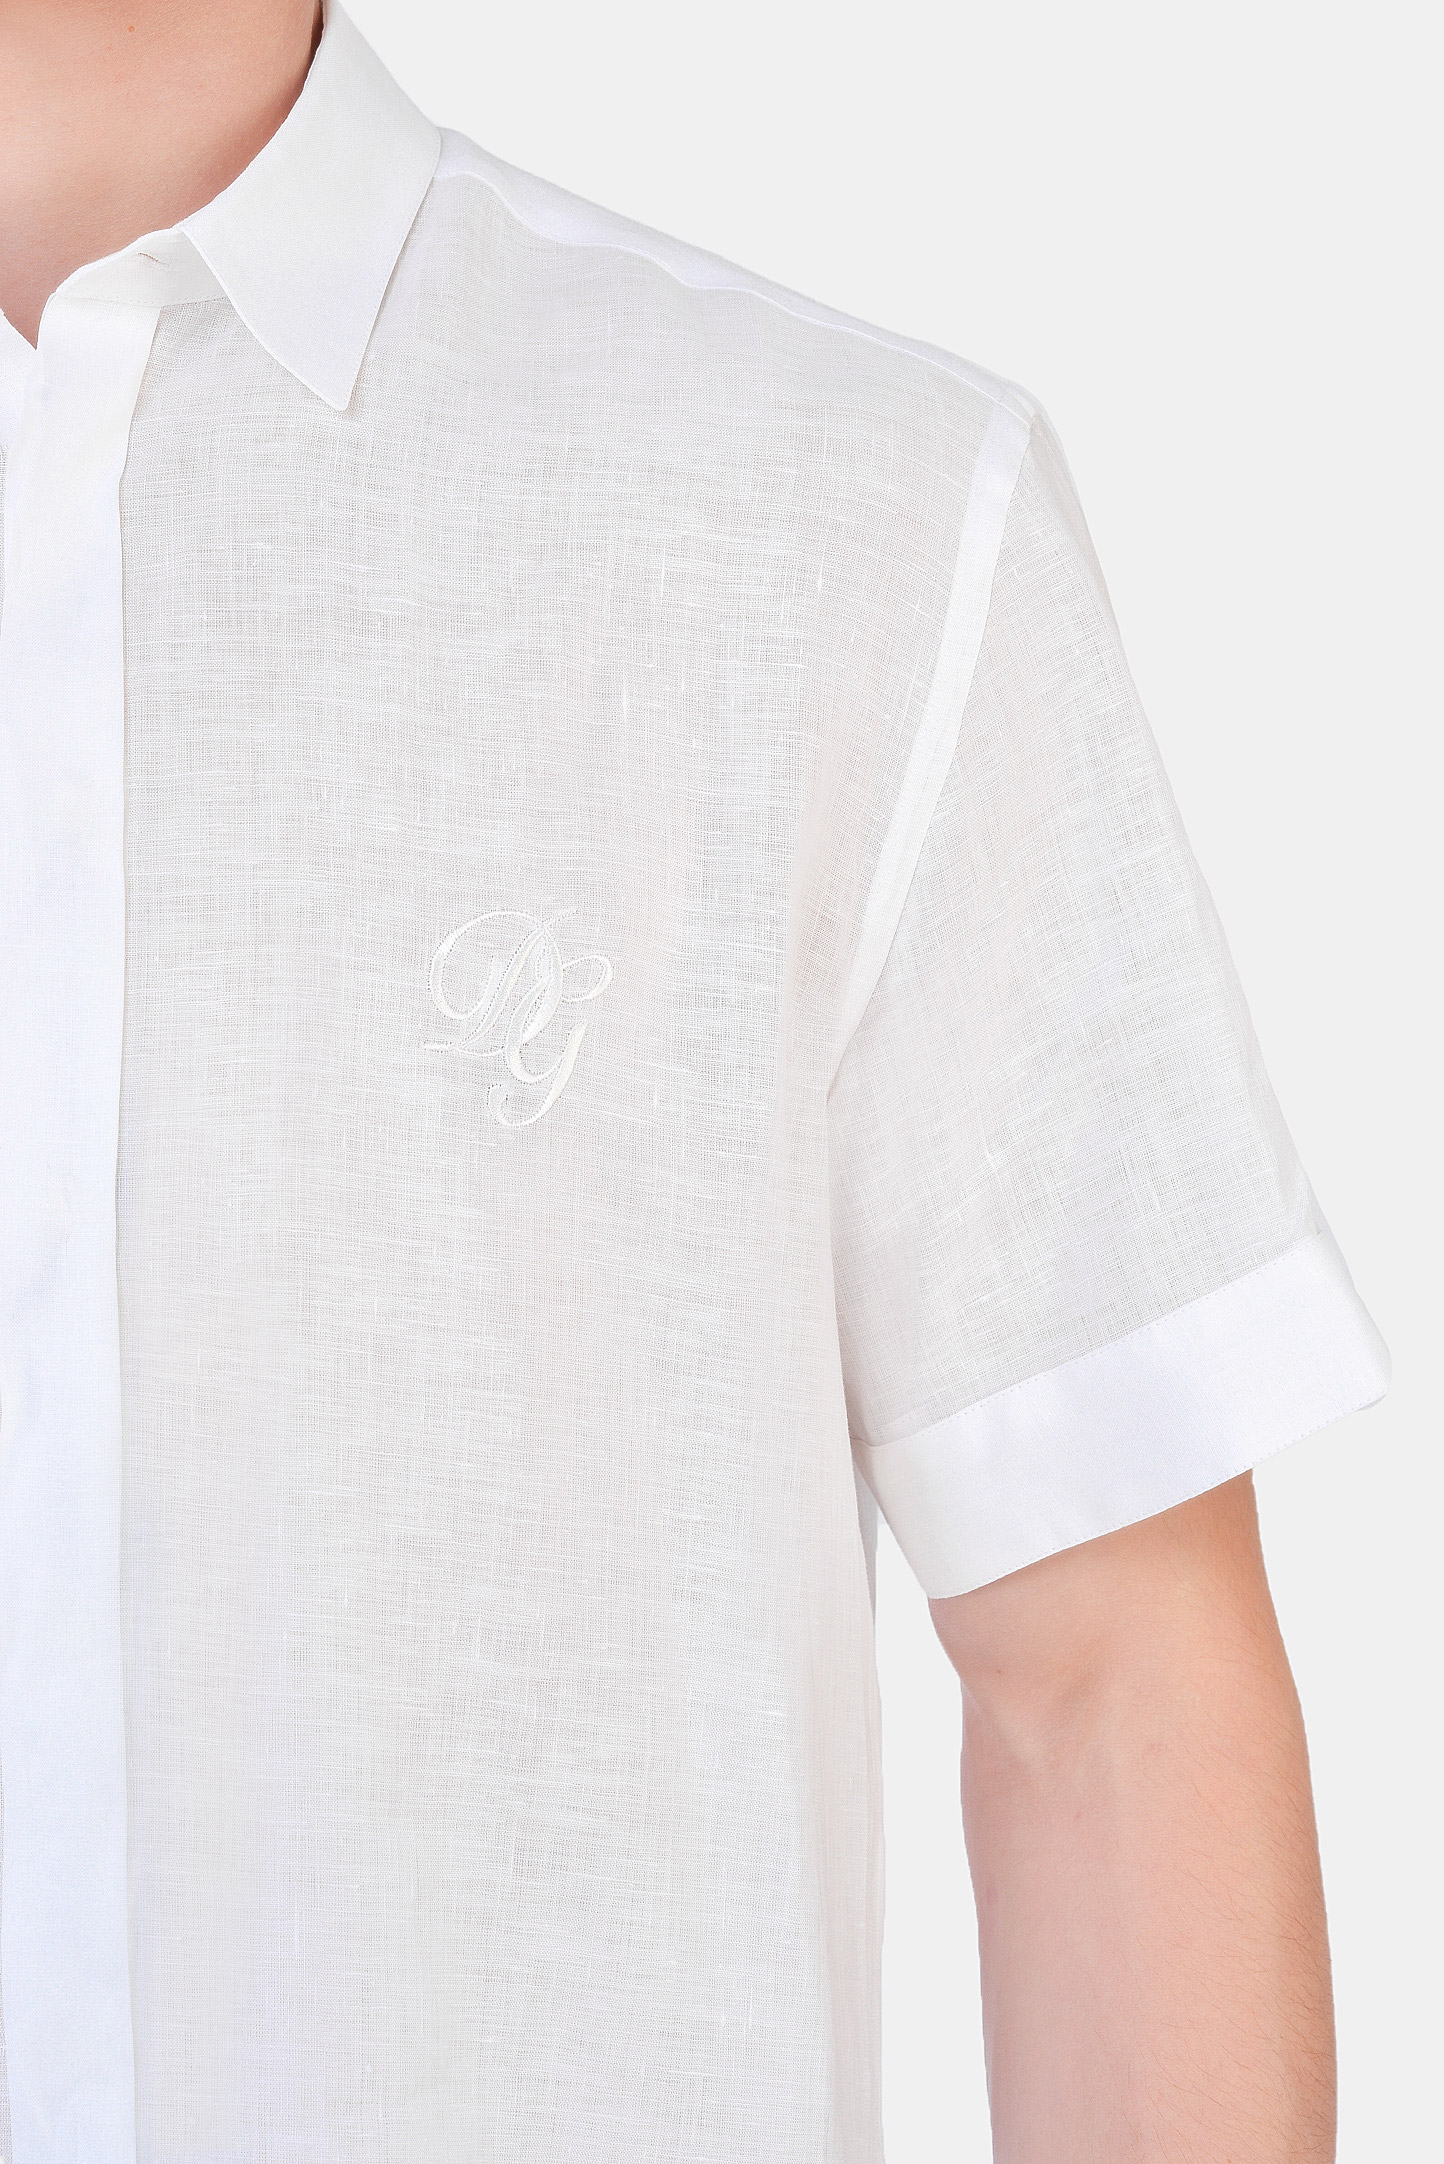 Рубашка DOLCE & GABBANA G5EX4Z FU4IK, цвет: Белый, Мужской